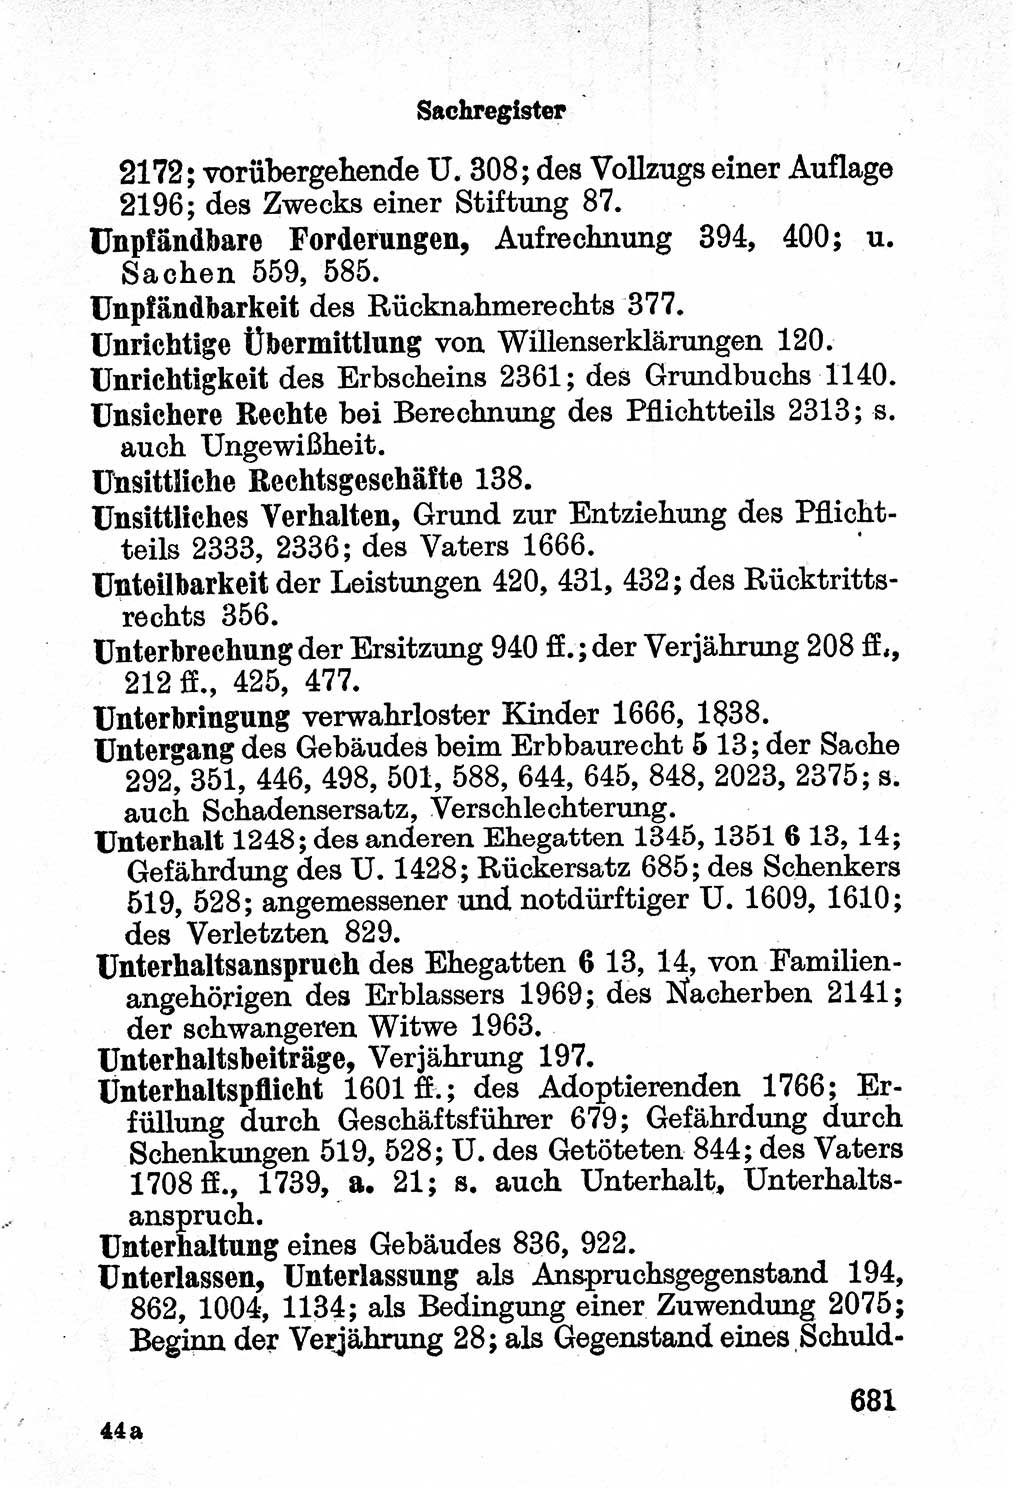 Bürgerliches Gesetzbuch (BGB) nebst wichtigen Nebengesetzen [Deutsche Demokratische Republik (DDR)] 1956, Seite 681 (BGB Nebenges. DDR 1956, S. 681)